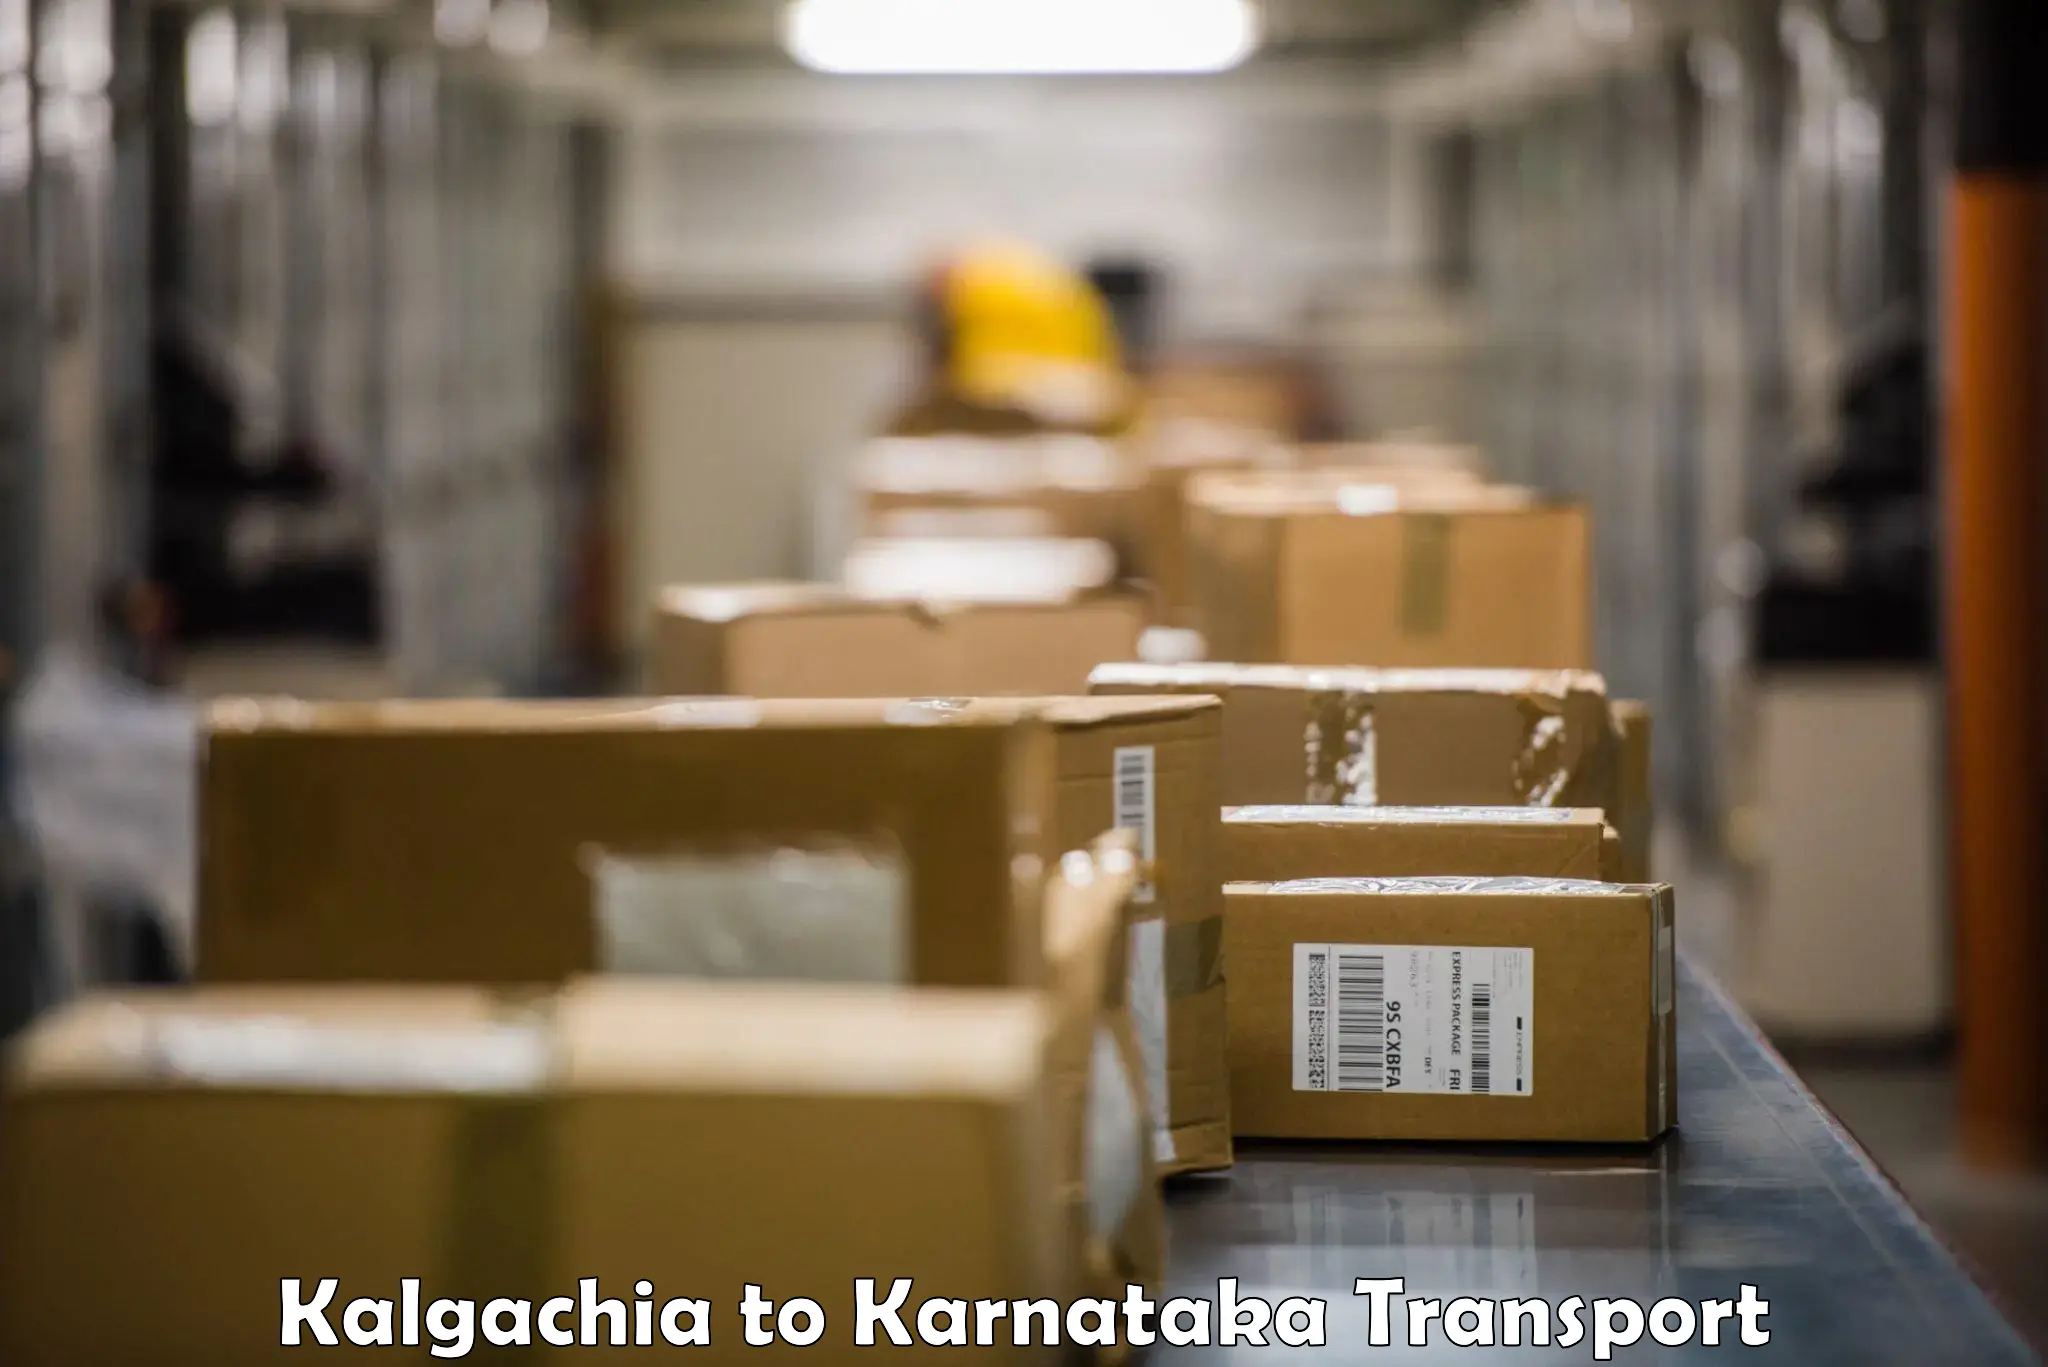 Air freight transport services Kalgachia to Chikkamagalur